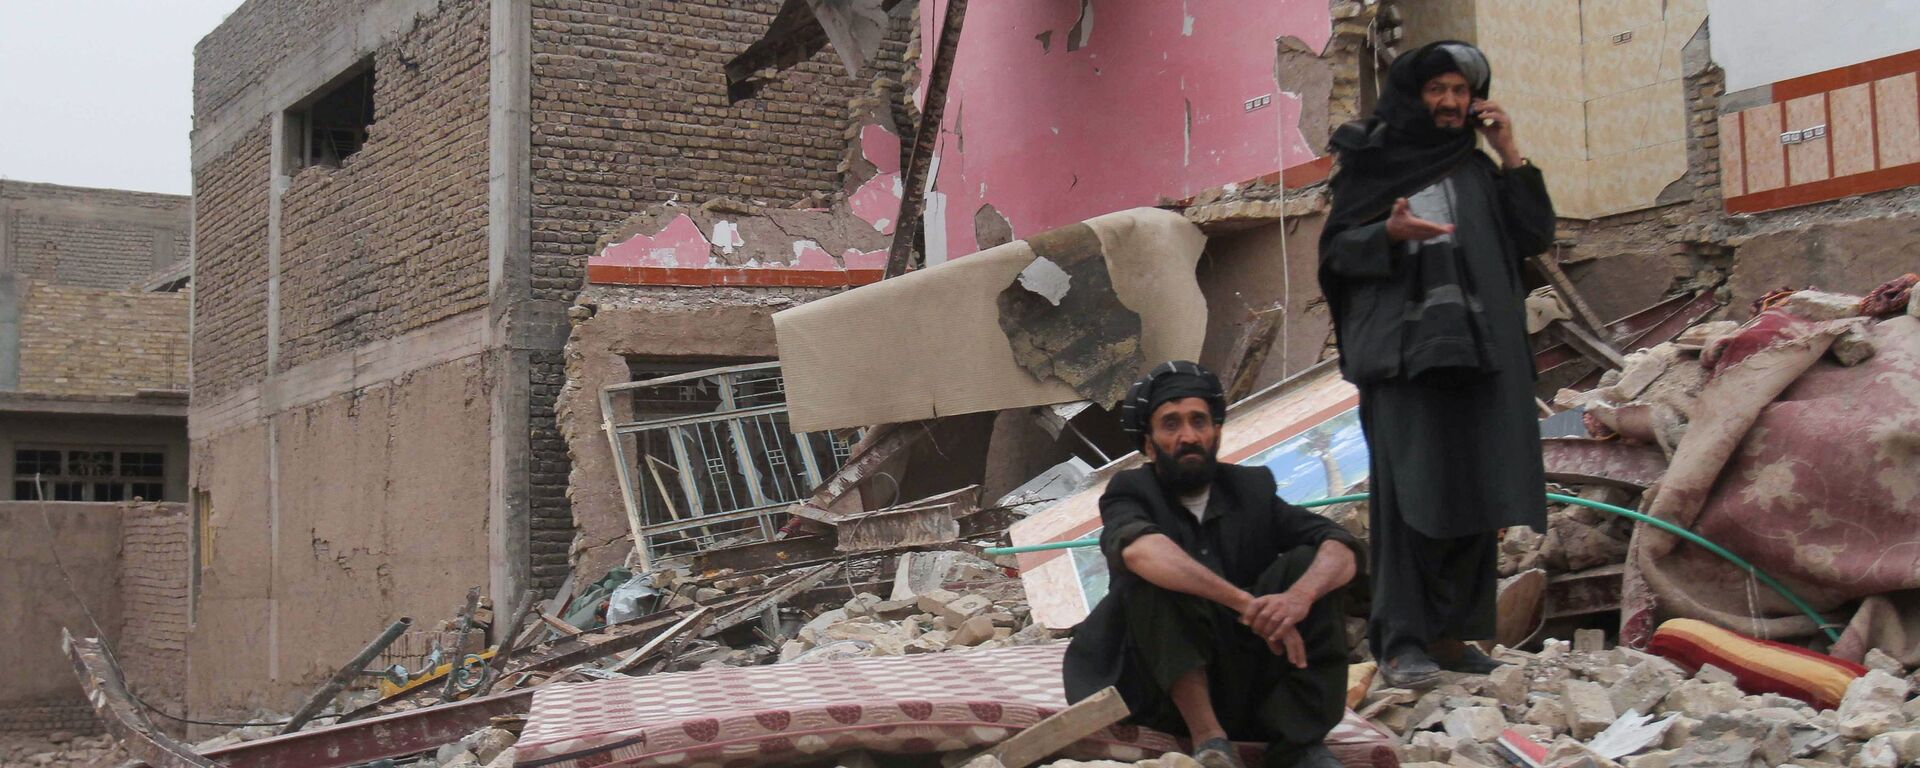 Moradores observam local após explosão de um carro-bomba na província de Herat, no Afeganistão - Sputnik Brasil, 1920, 17.01.2022